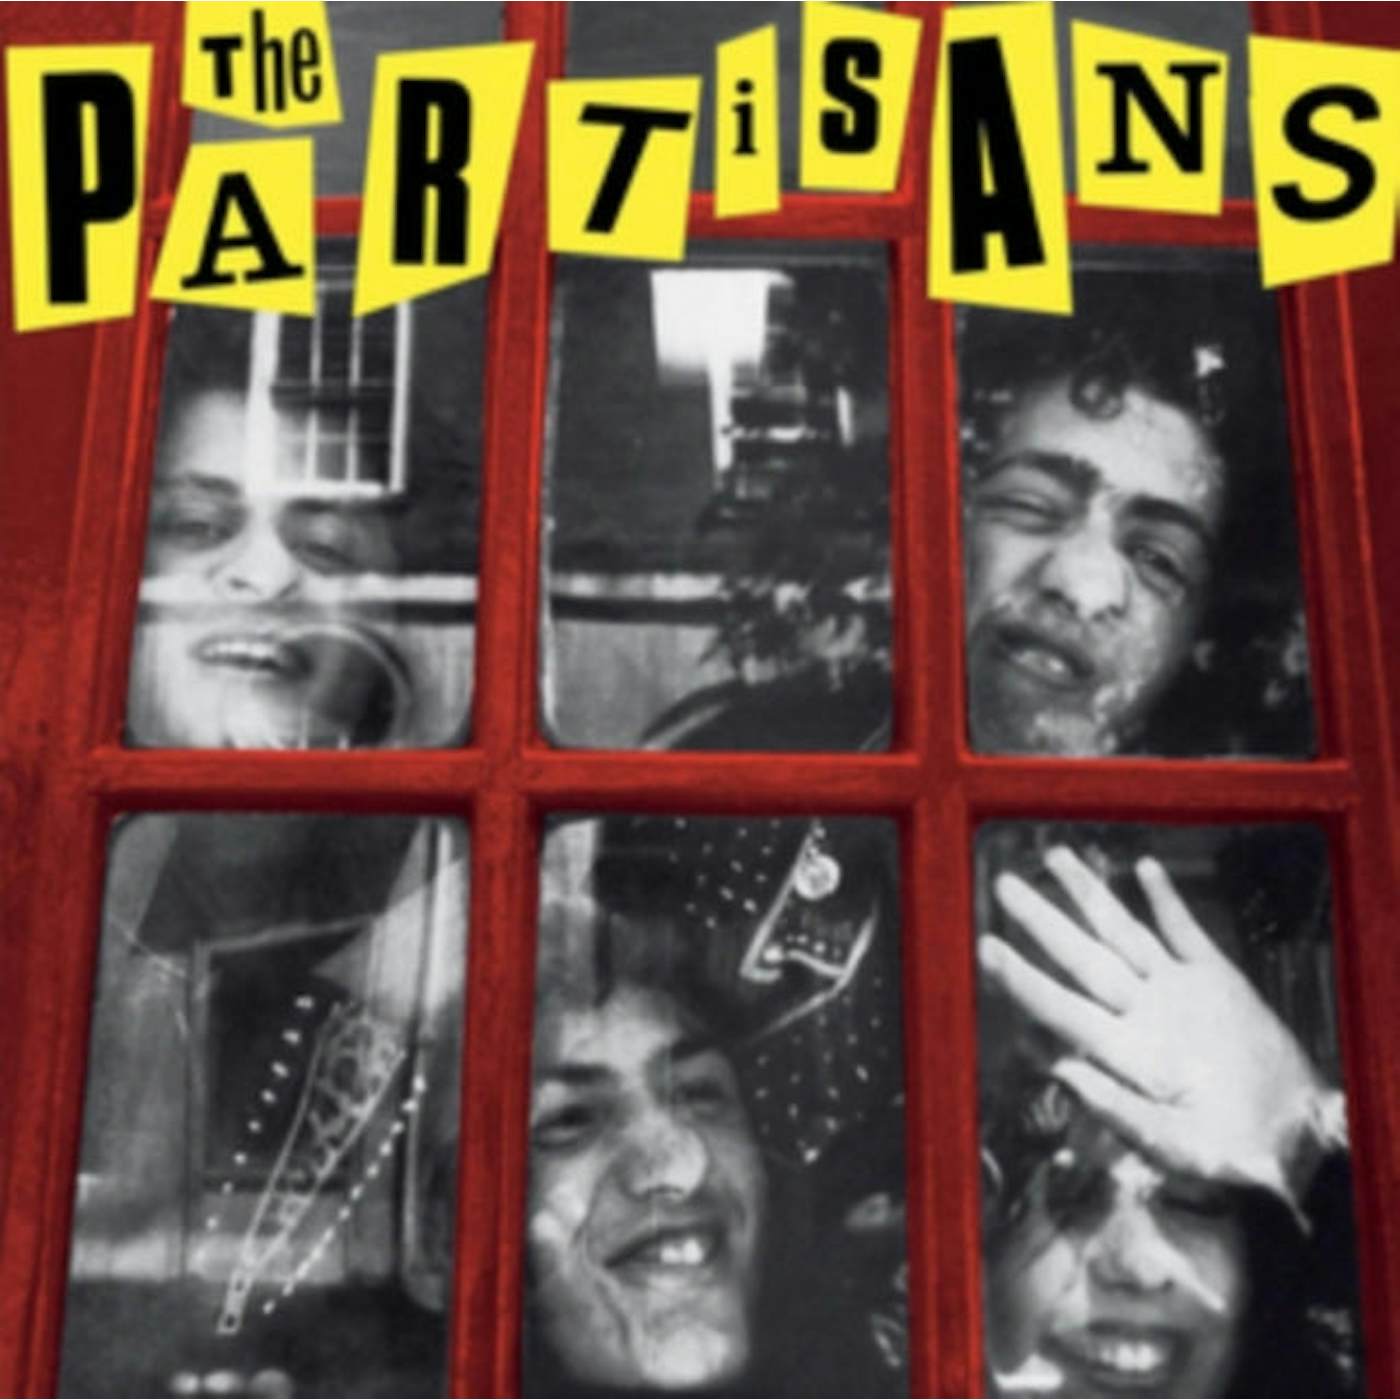 Partisans LP Vinyl Record - The Partisans